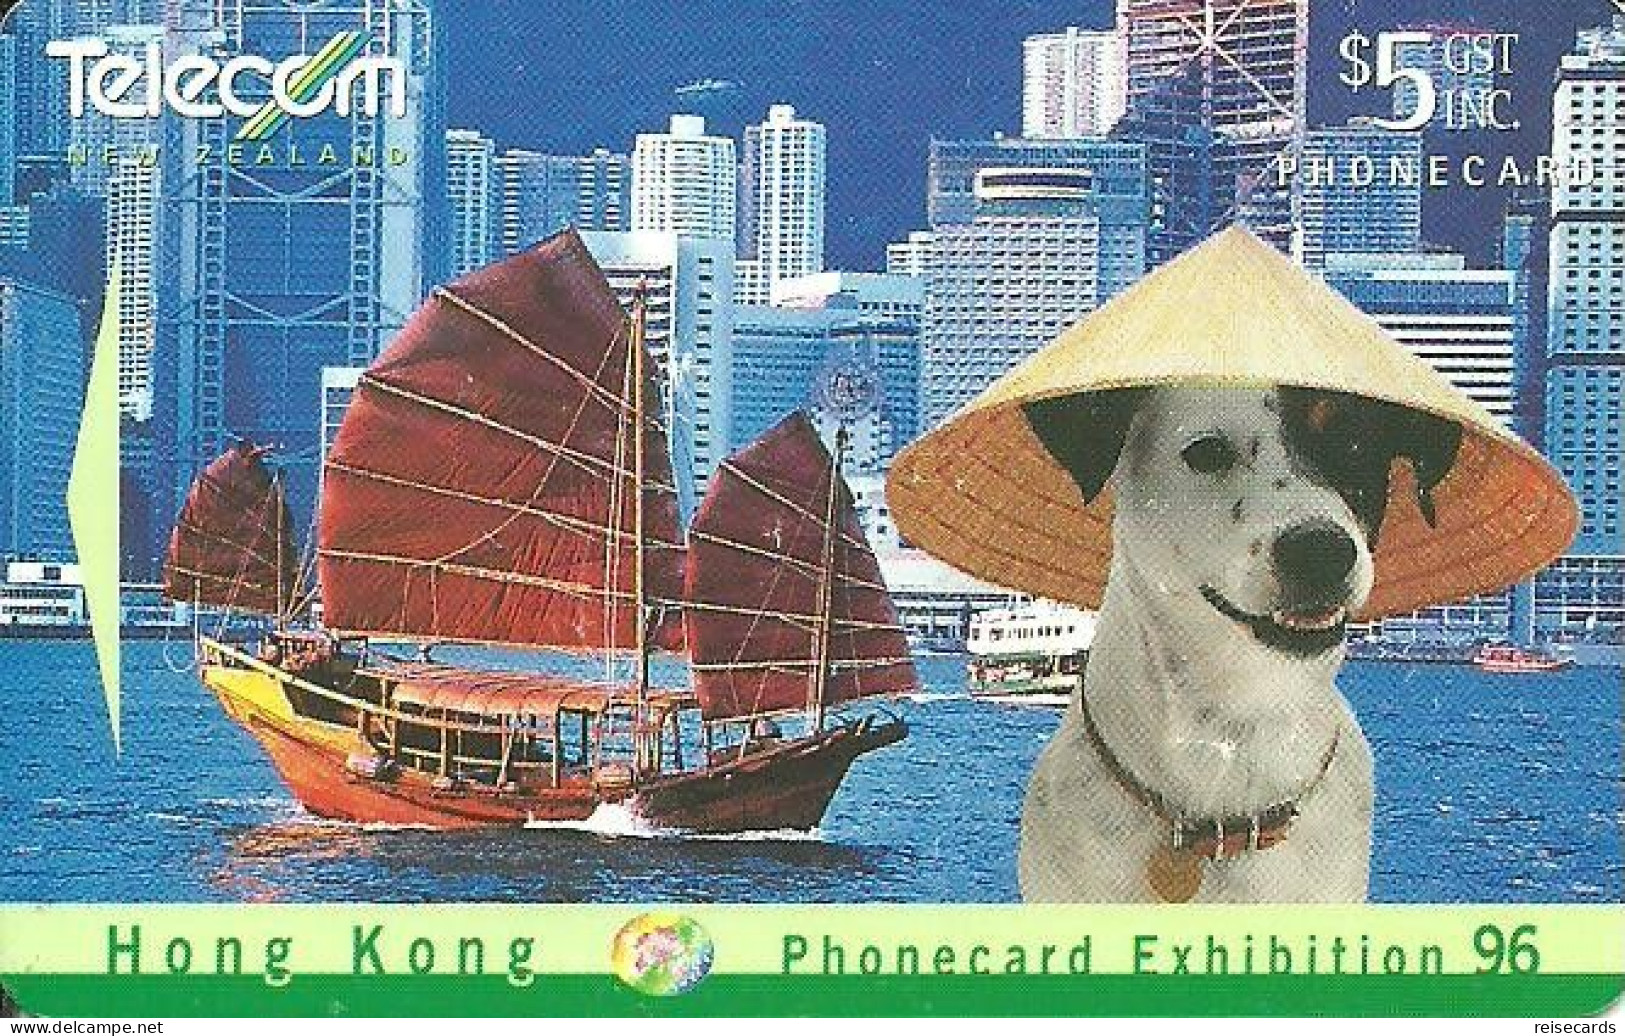 New Zealand: Telecom - 1996 Phonecard Exhibition Hong Kong 96, Spot Cruising Hong Kong Harbour - New Zealand